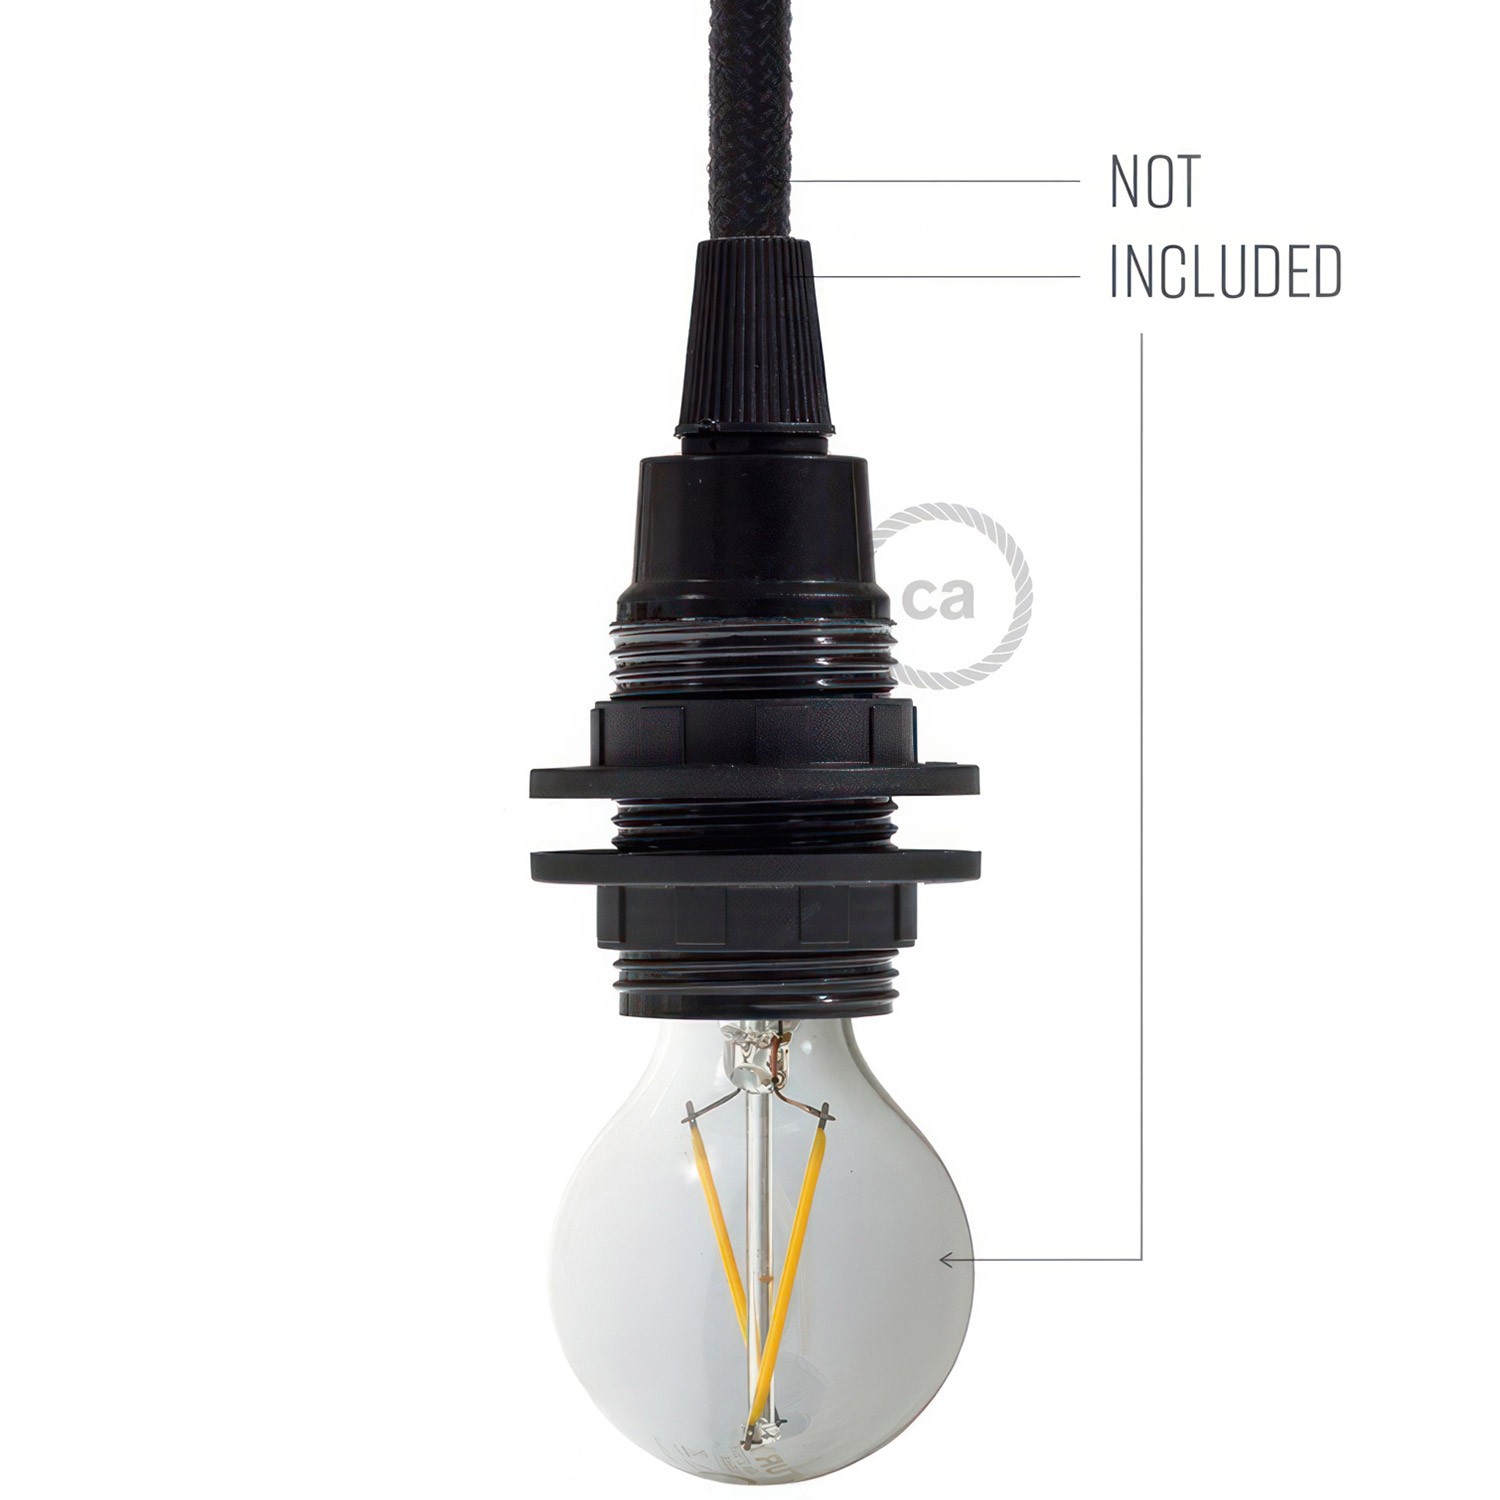 E14-Lampenfassungs-Kit aus Bakelit mit Doppelklemmring für Lampenschirme